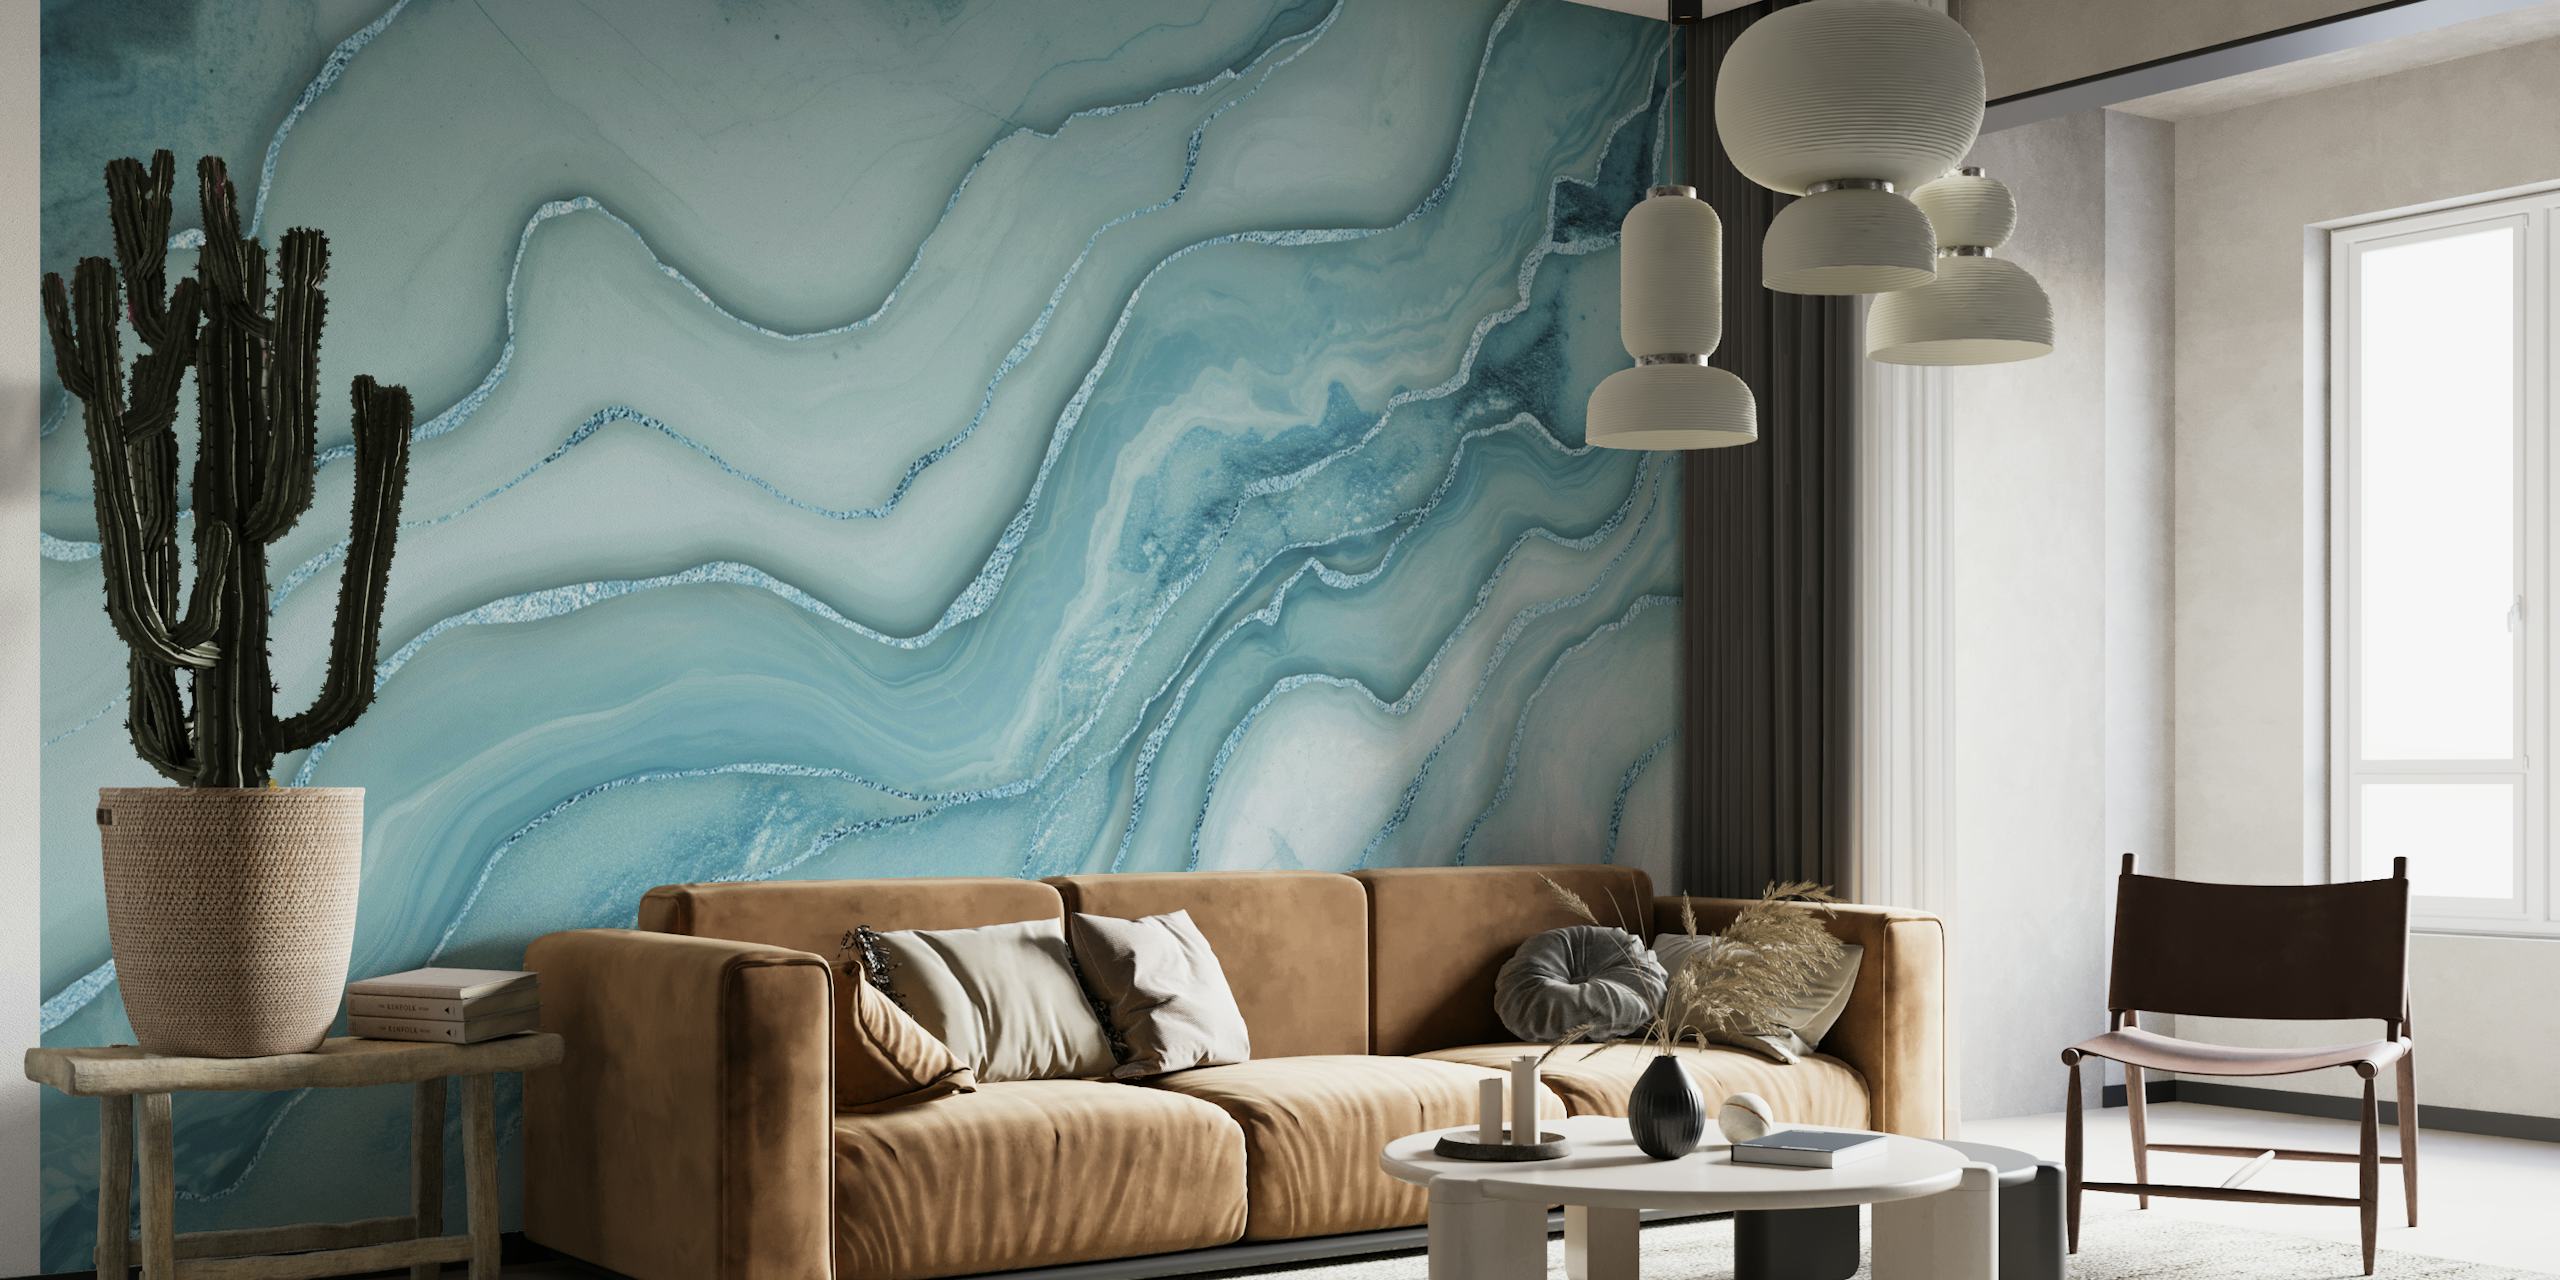 Aqua sininen marmorikuvioinen seinämaalaus, jossa pyörteileviä harmaita aksentteja luovat ylellisen ja rauhallisen tunnelman.